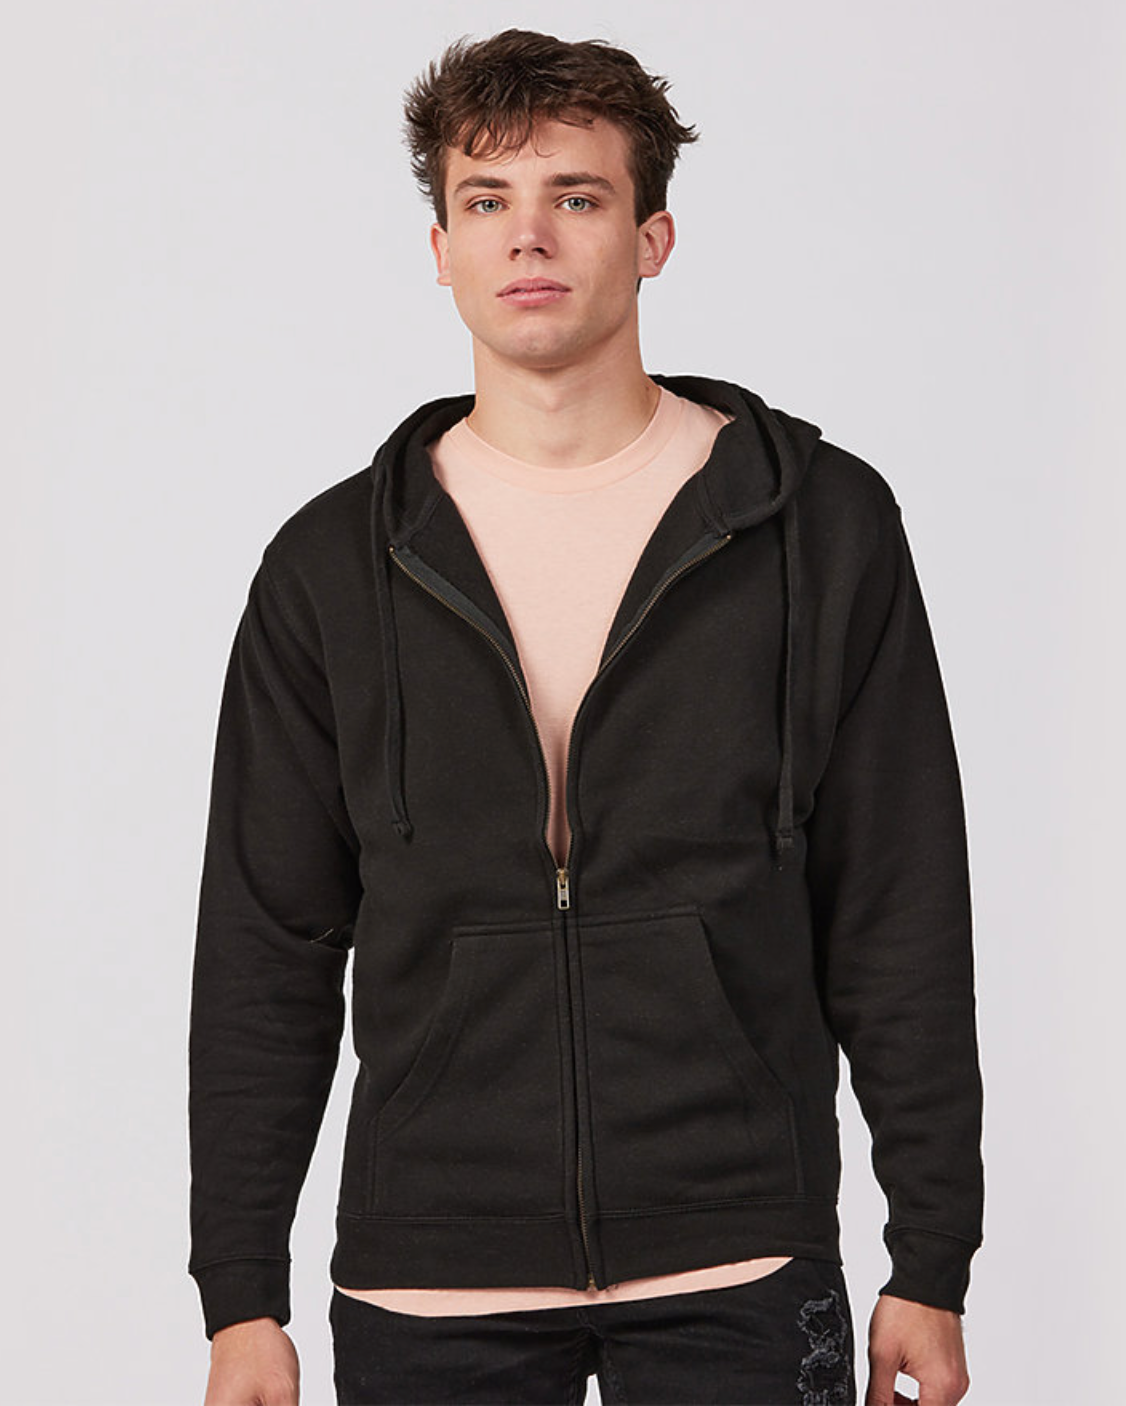 Tultex Unisex Premium Fleece Full-Zip Hooded Sweatshirt